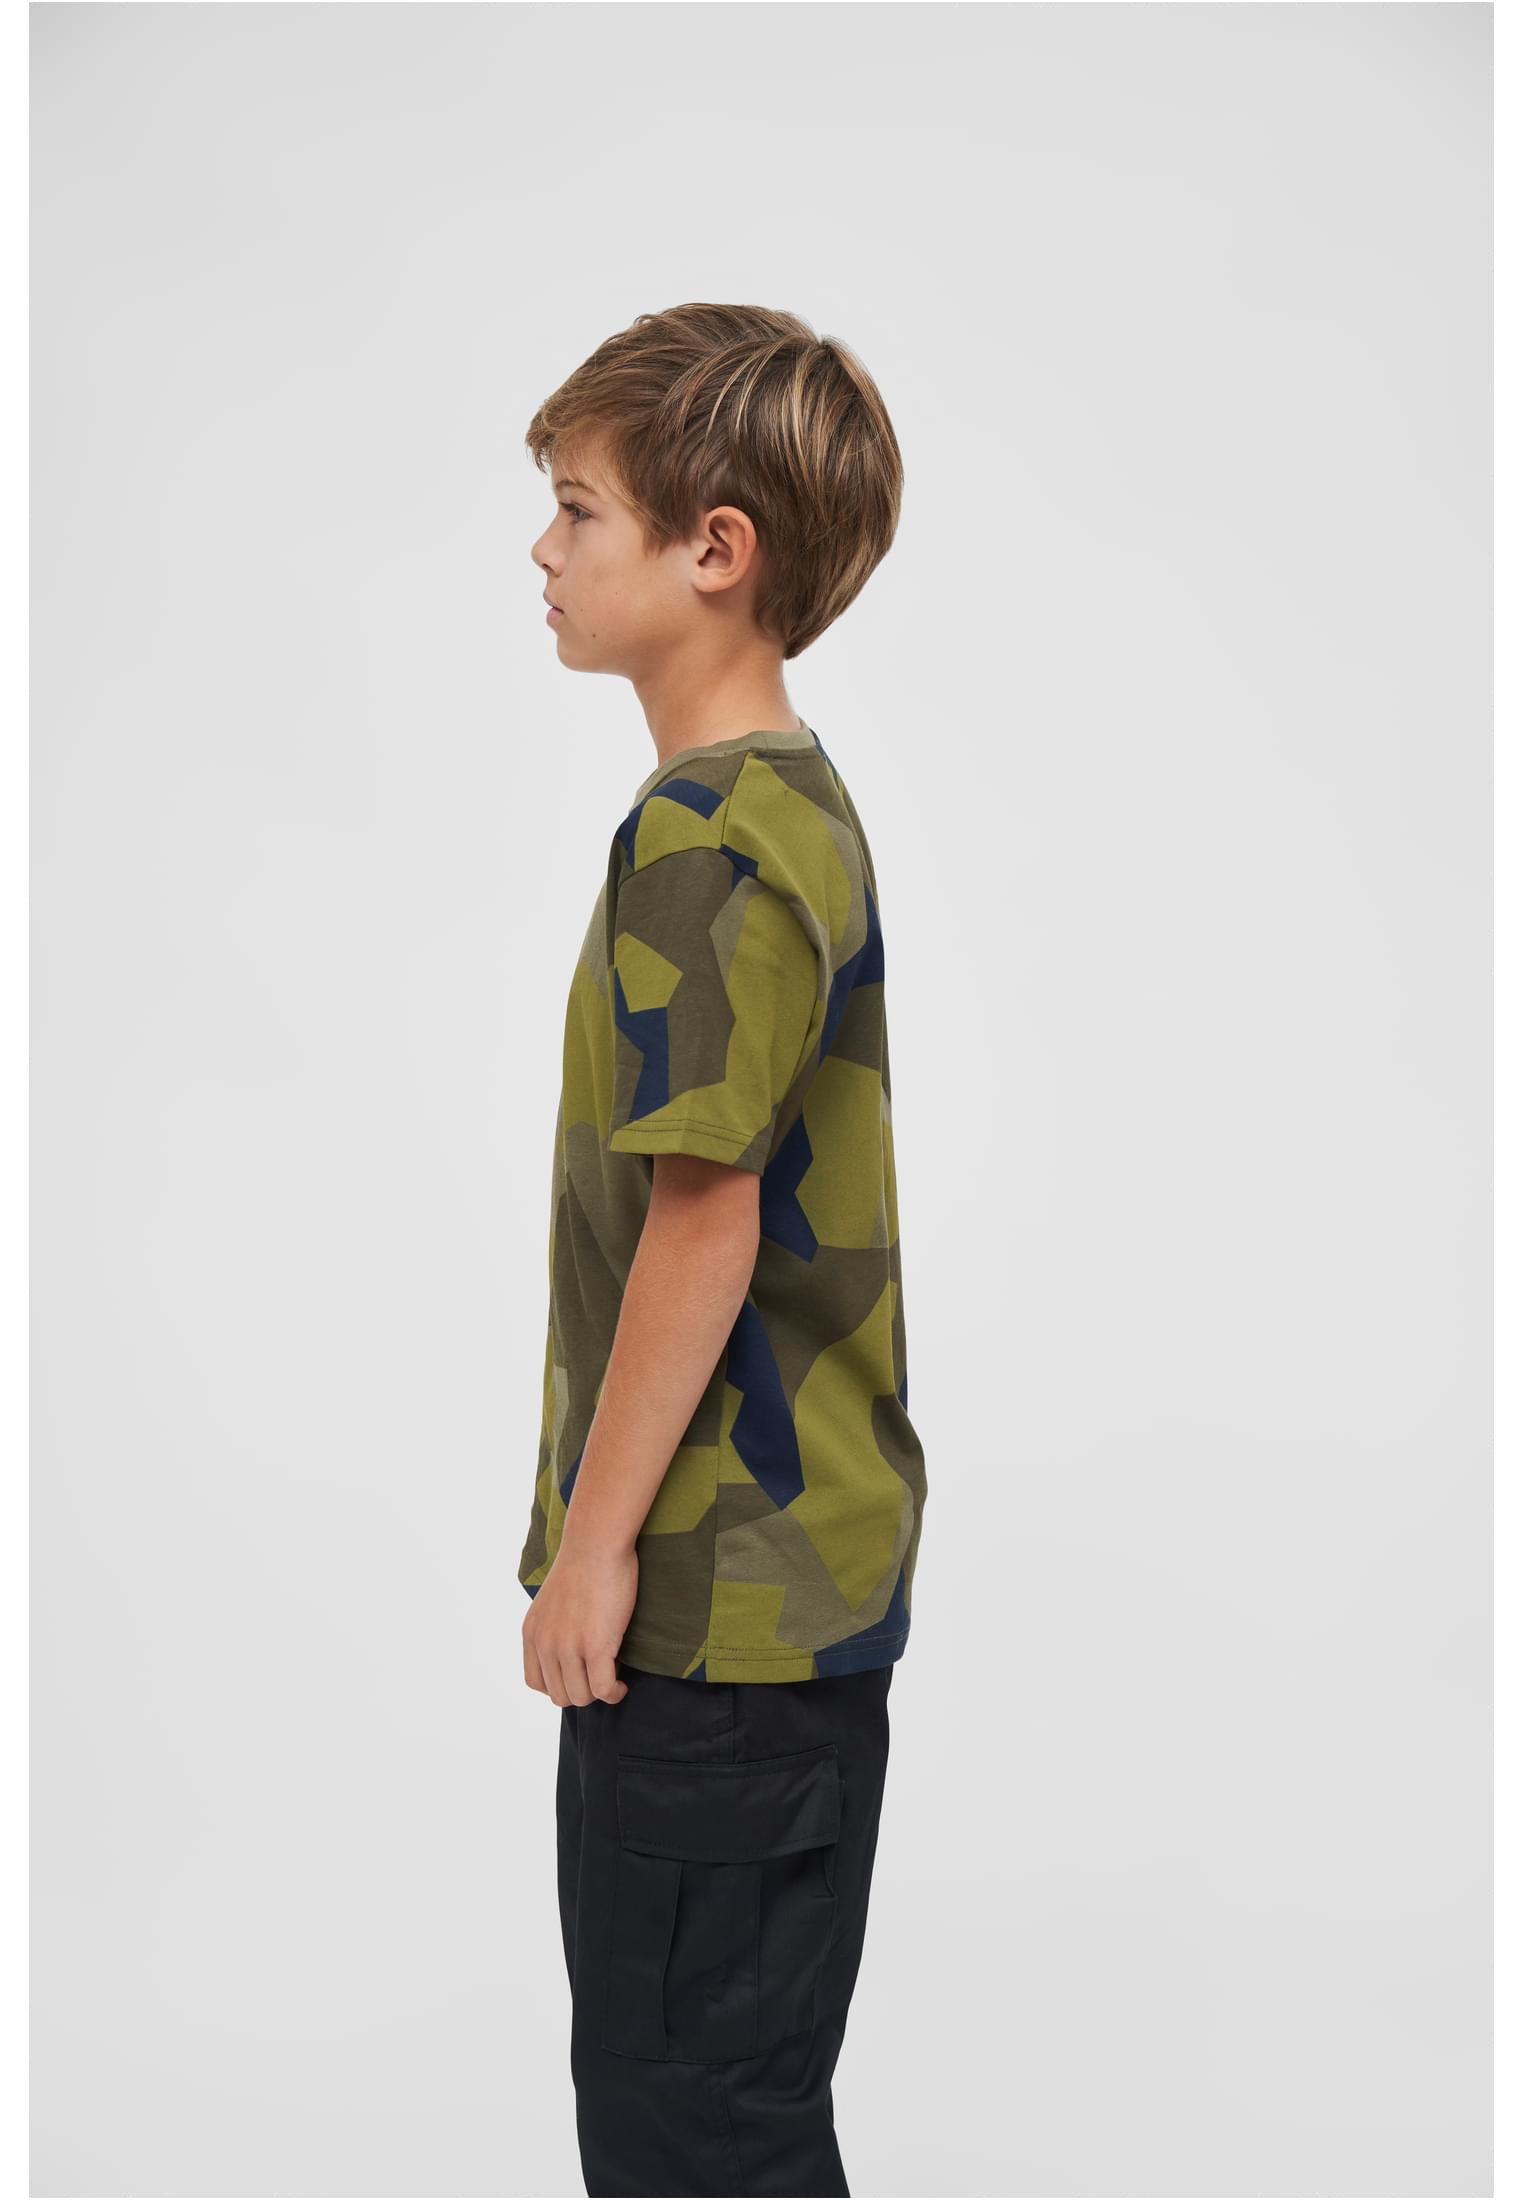 T-Shirts Kids T-Shirt in Farbe swedish camo